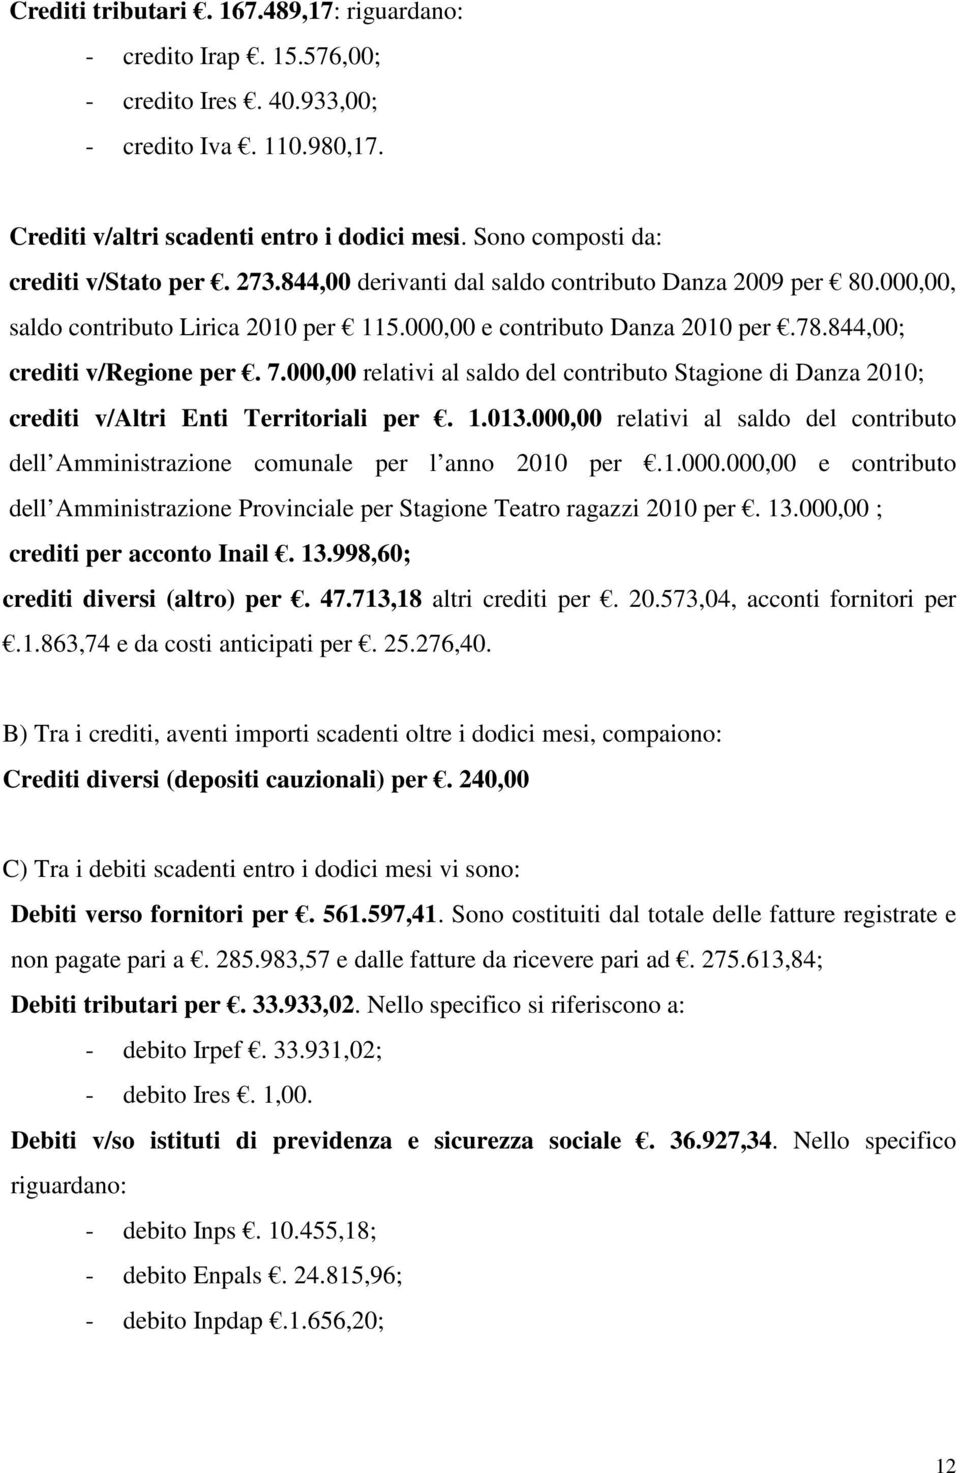 844,00; crediti v/regione per. 7.000,00 relativi al saldo del contributo Stagione di Danza 2010; crediti v/altri Enti Territoriali per. 1.013.